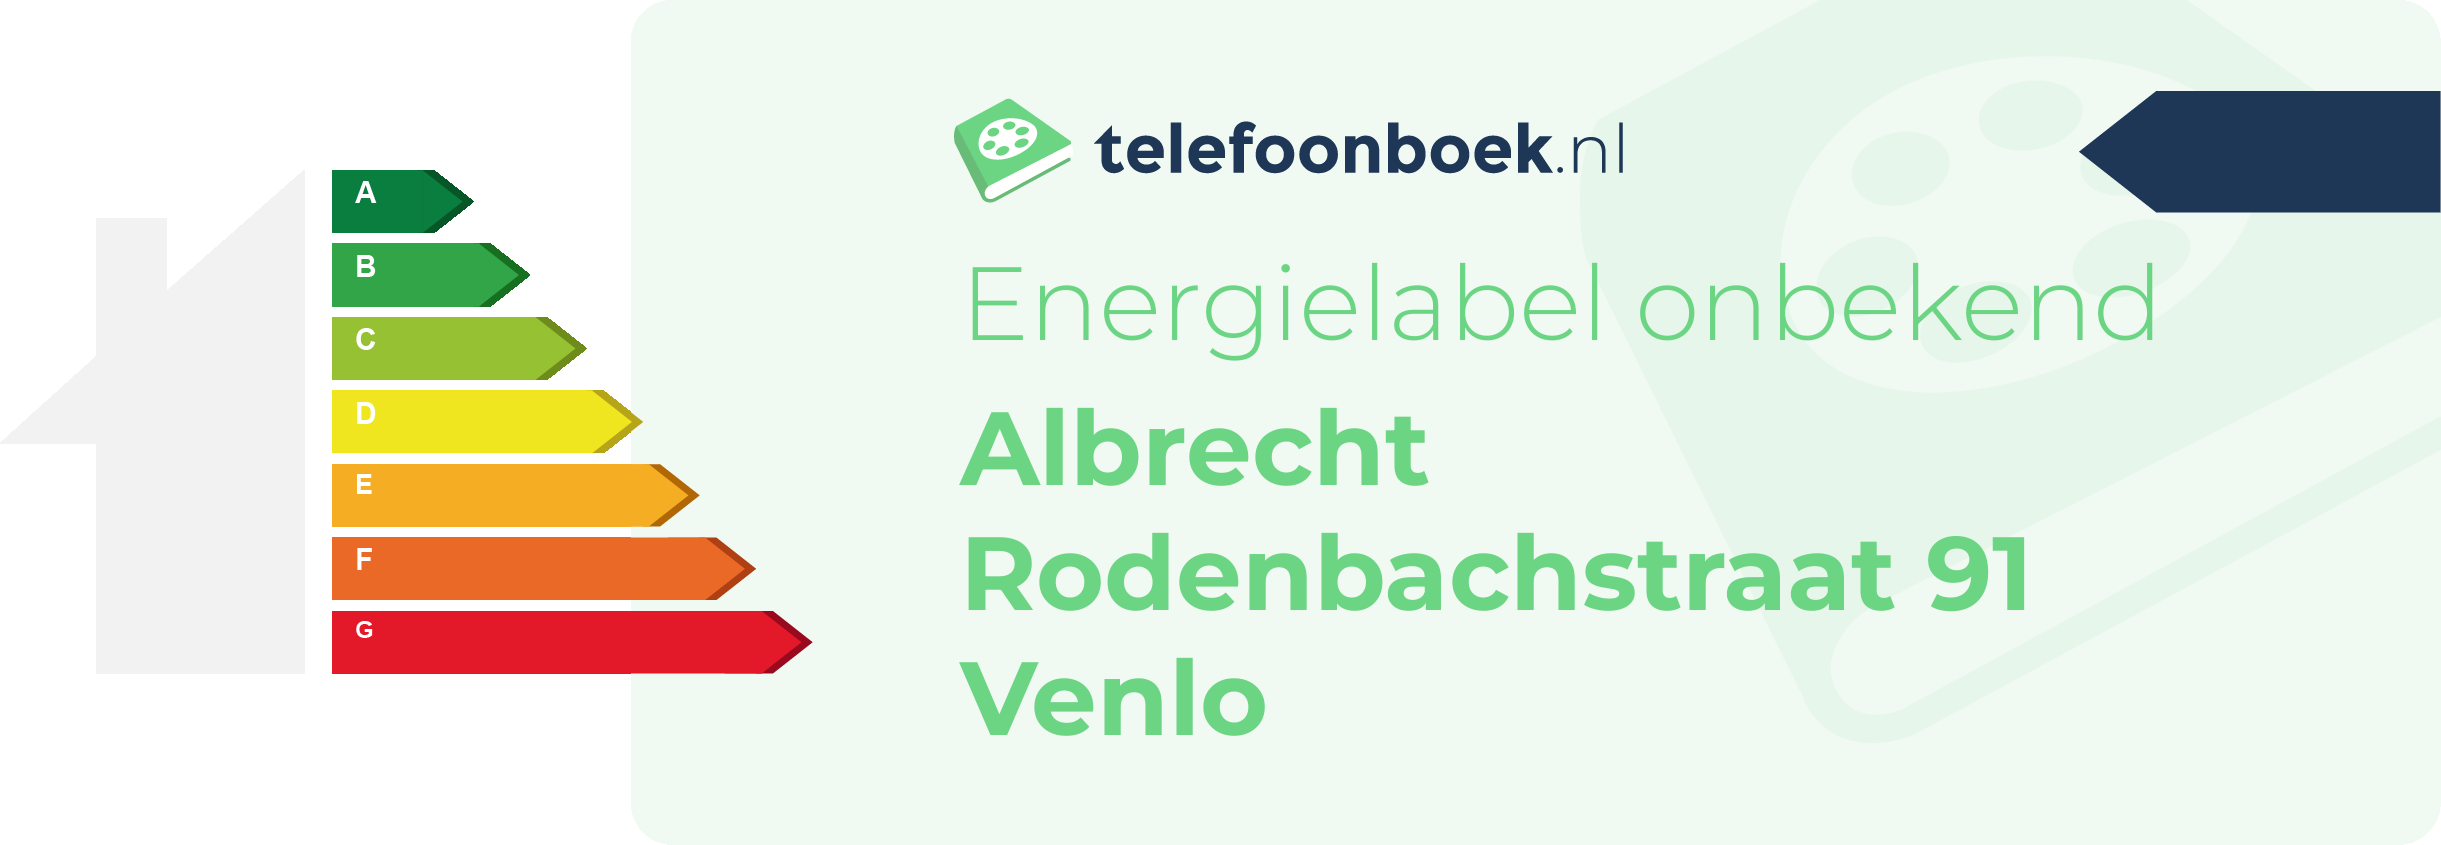 Energielabel Albrecht Rodenbachstraat 91 Venlo